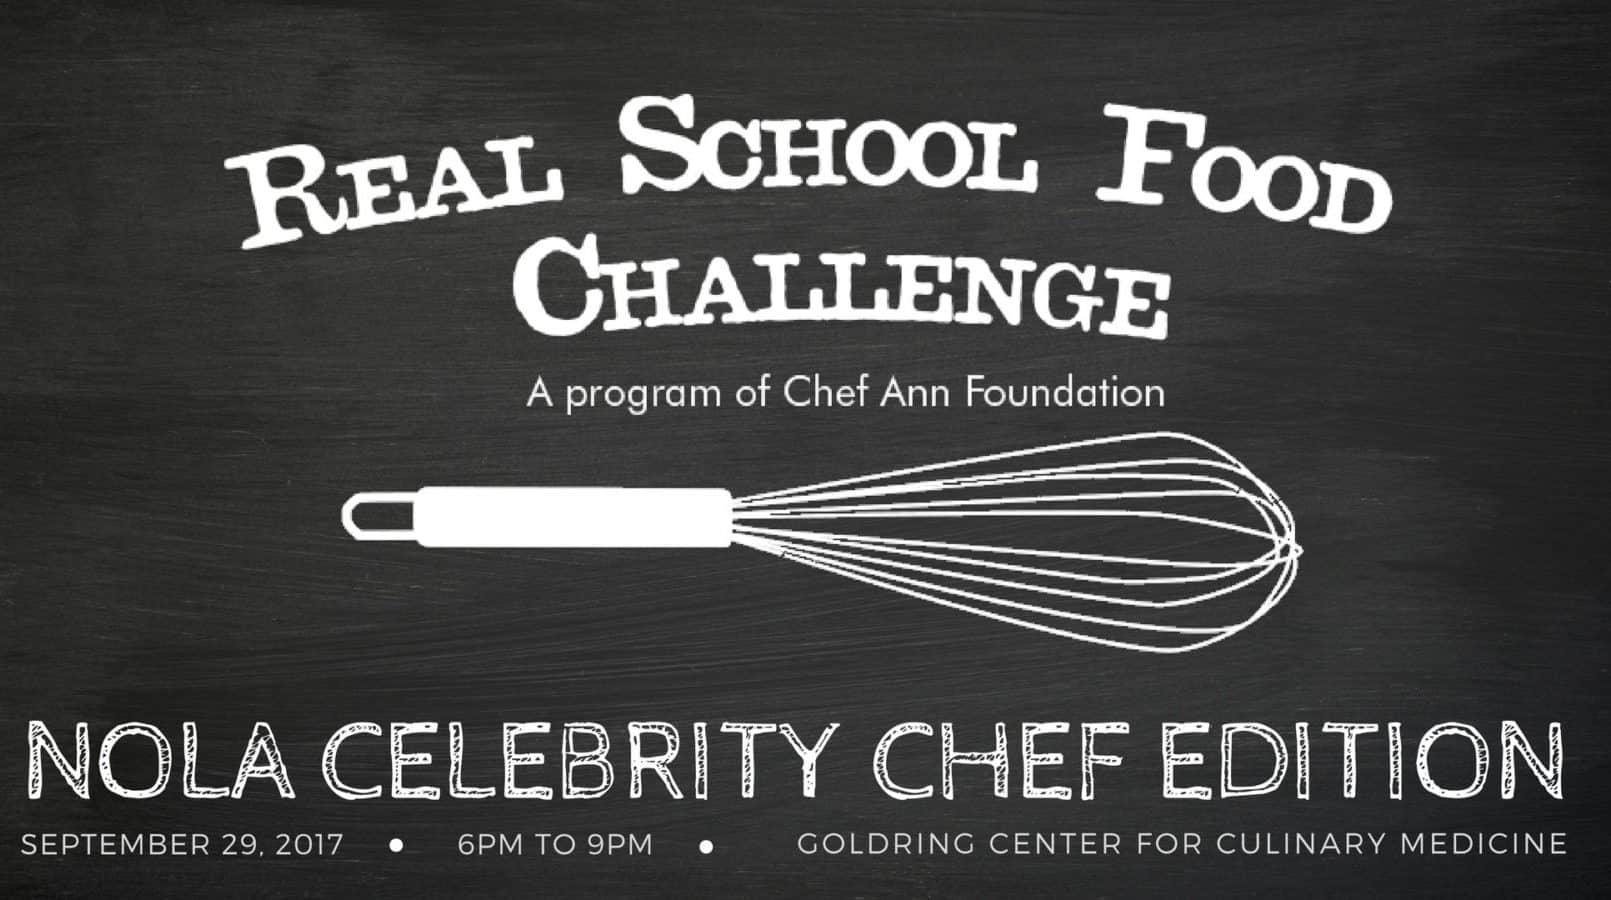 厨师安基金会是具有挑战性的一群新奥尔良最著名的厨师来创建健康学校午餐食谱仅为1.25美元每顿饭。